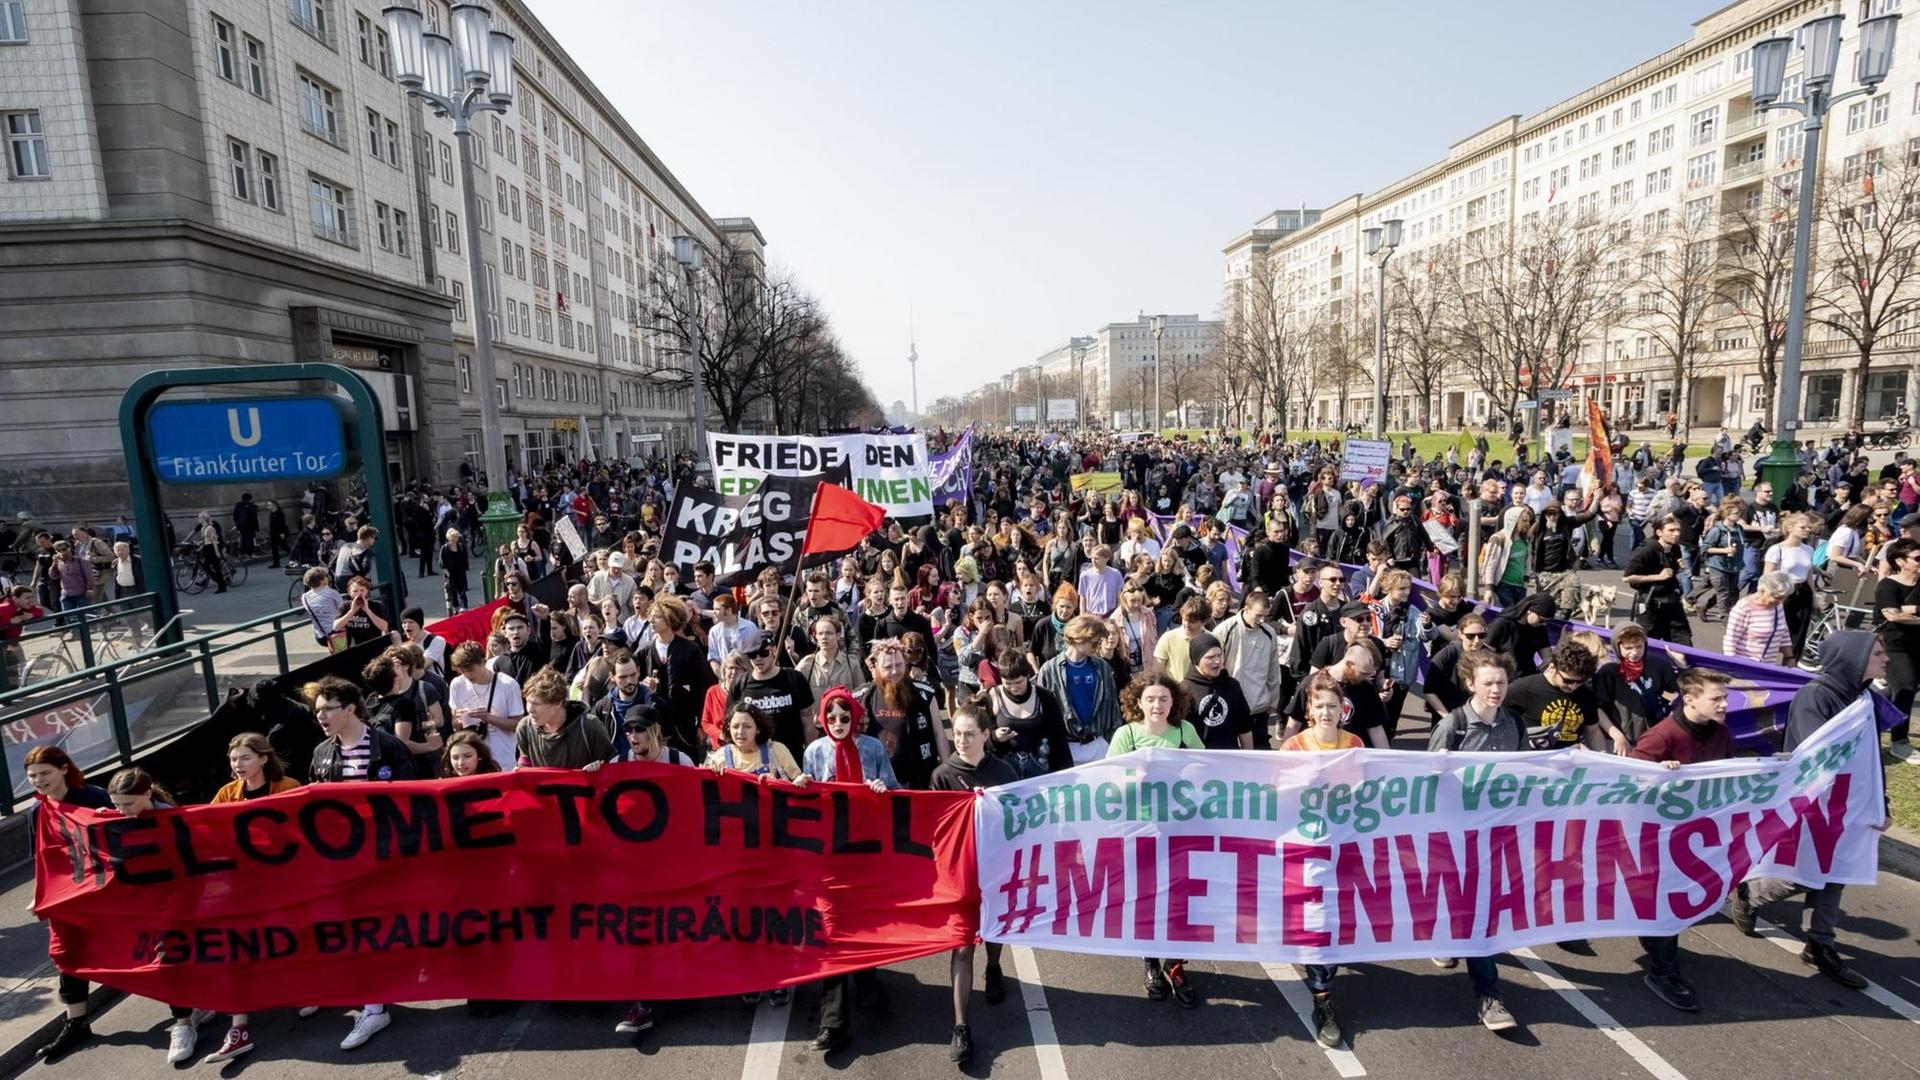 Der Demonstrationszug gegen steigende Mieten vom Bündnis gegen Verdrängung und #Mietenwahnsinn zieht durch die Karl-Marx-Allee in Berlin.